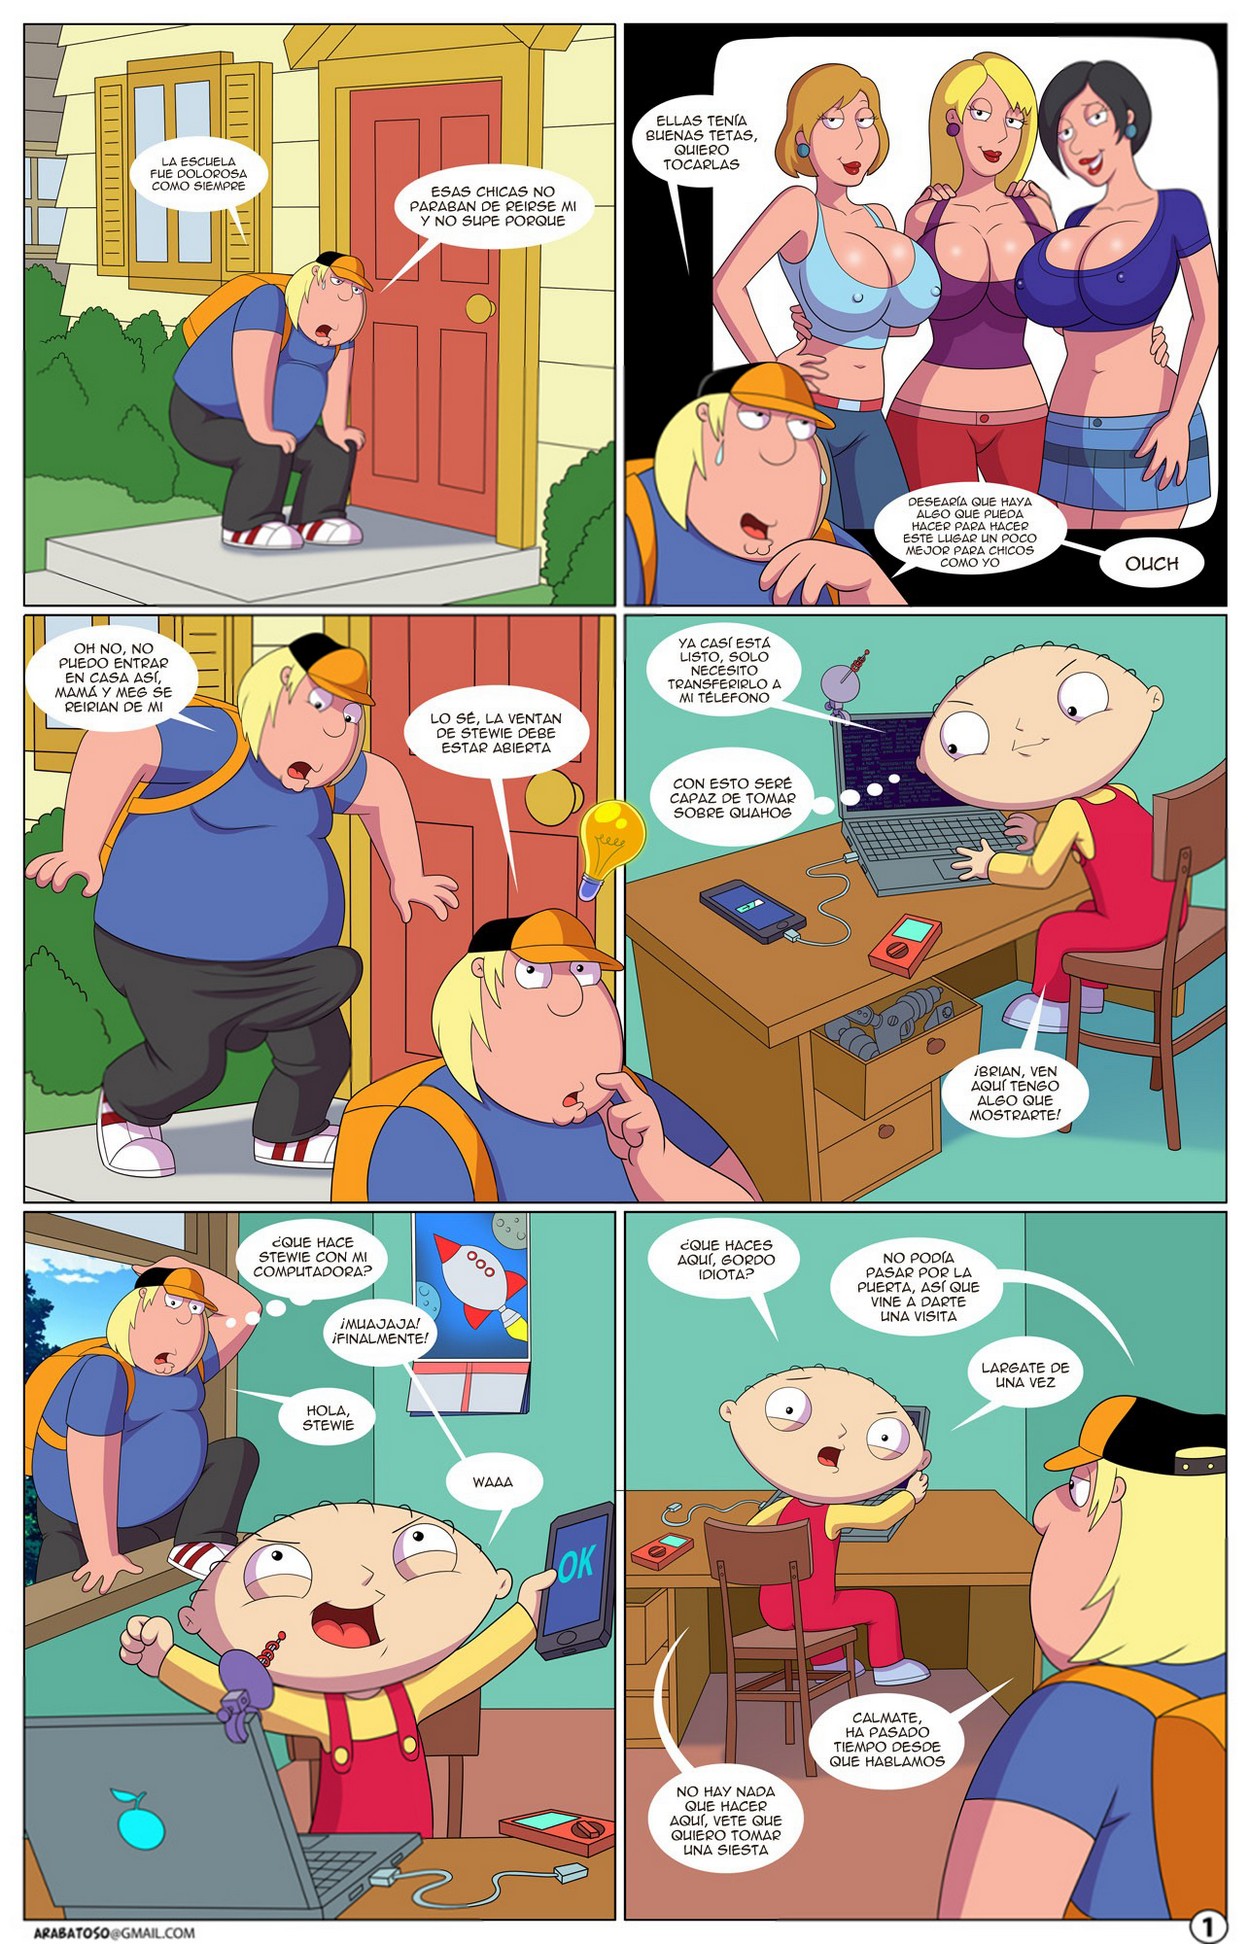 Quahog Diaries 1 – Family Guy - 9e572a2a7b4e38485d1ddd14dee56120